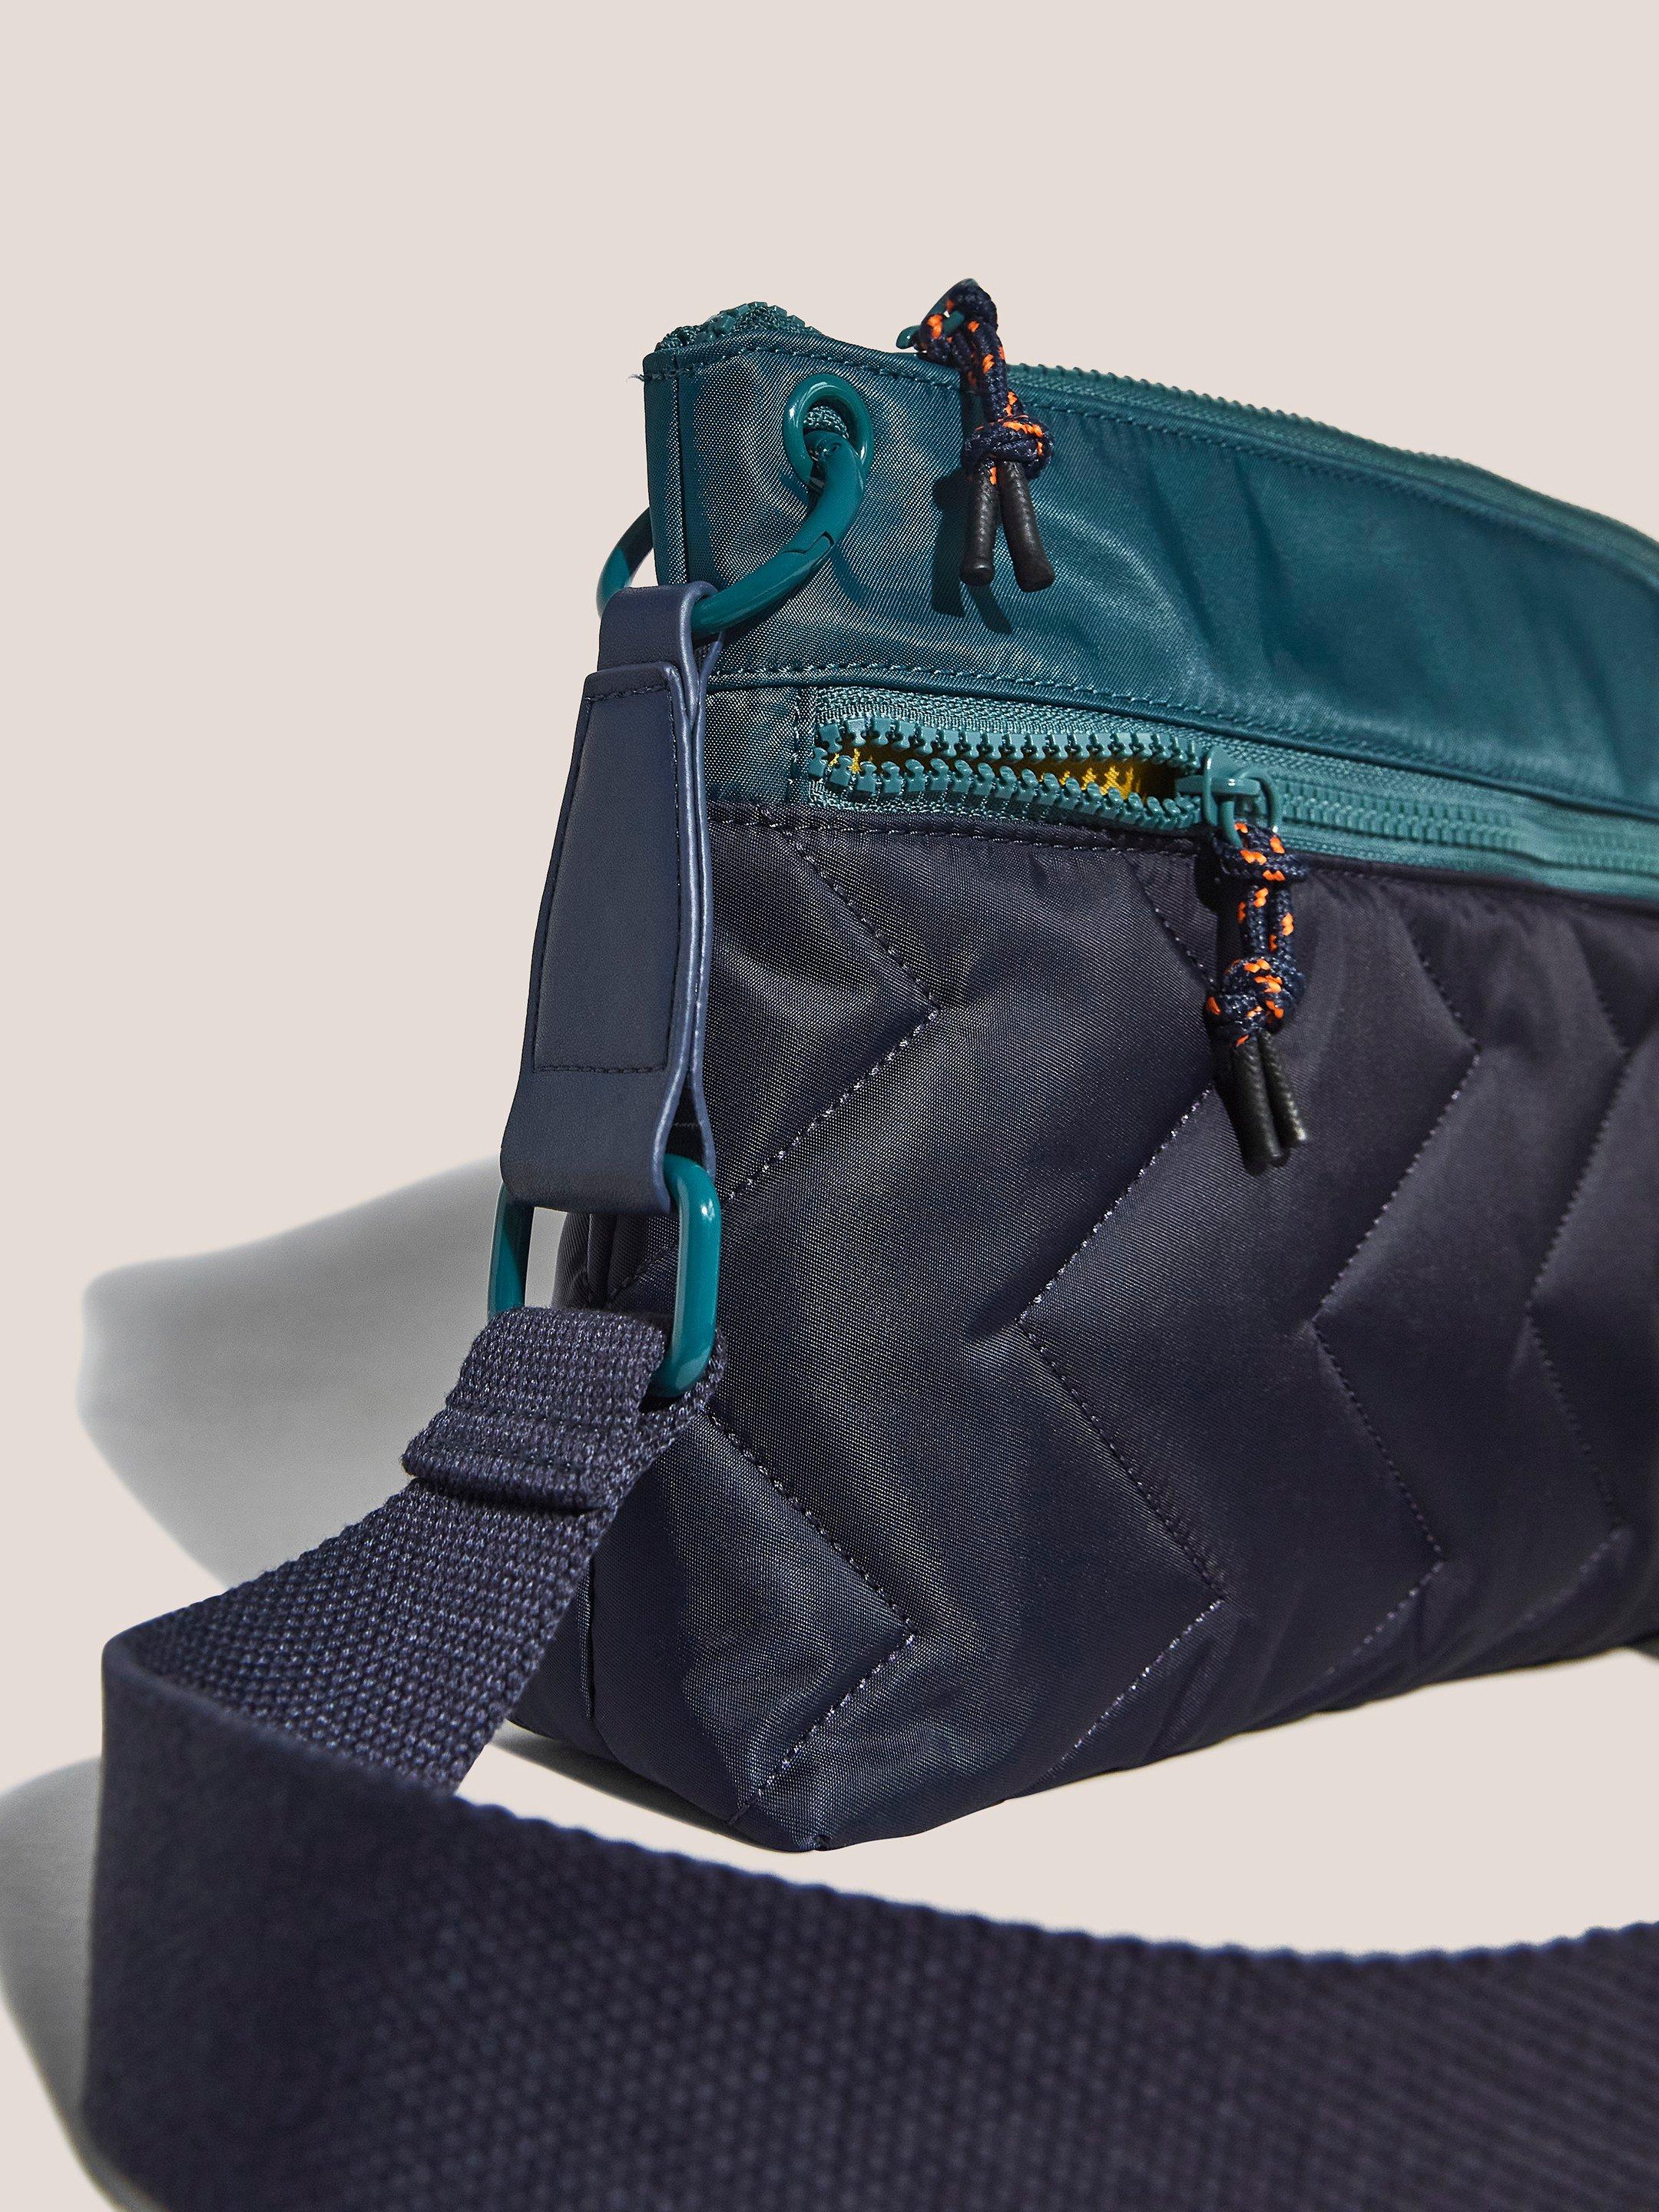 Wanda Nylon Crossbody Bag in NAVY MULTI - FLAT FRONT